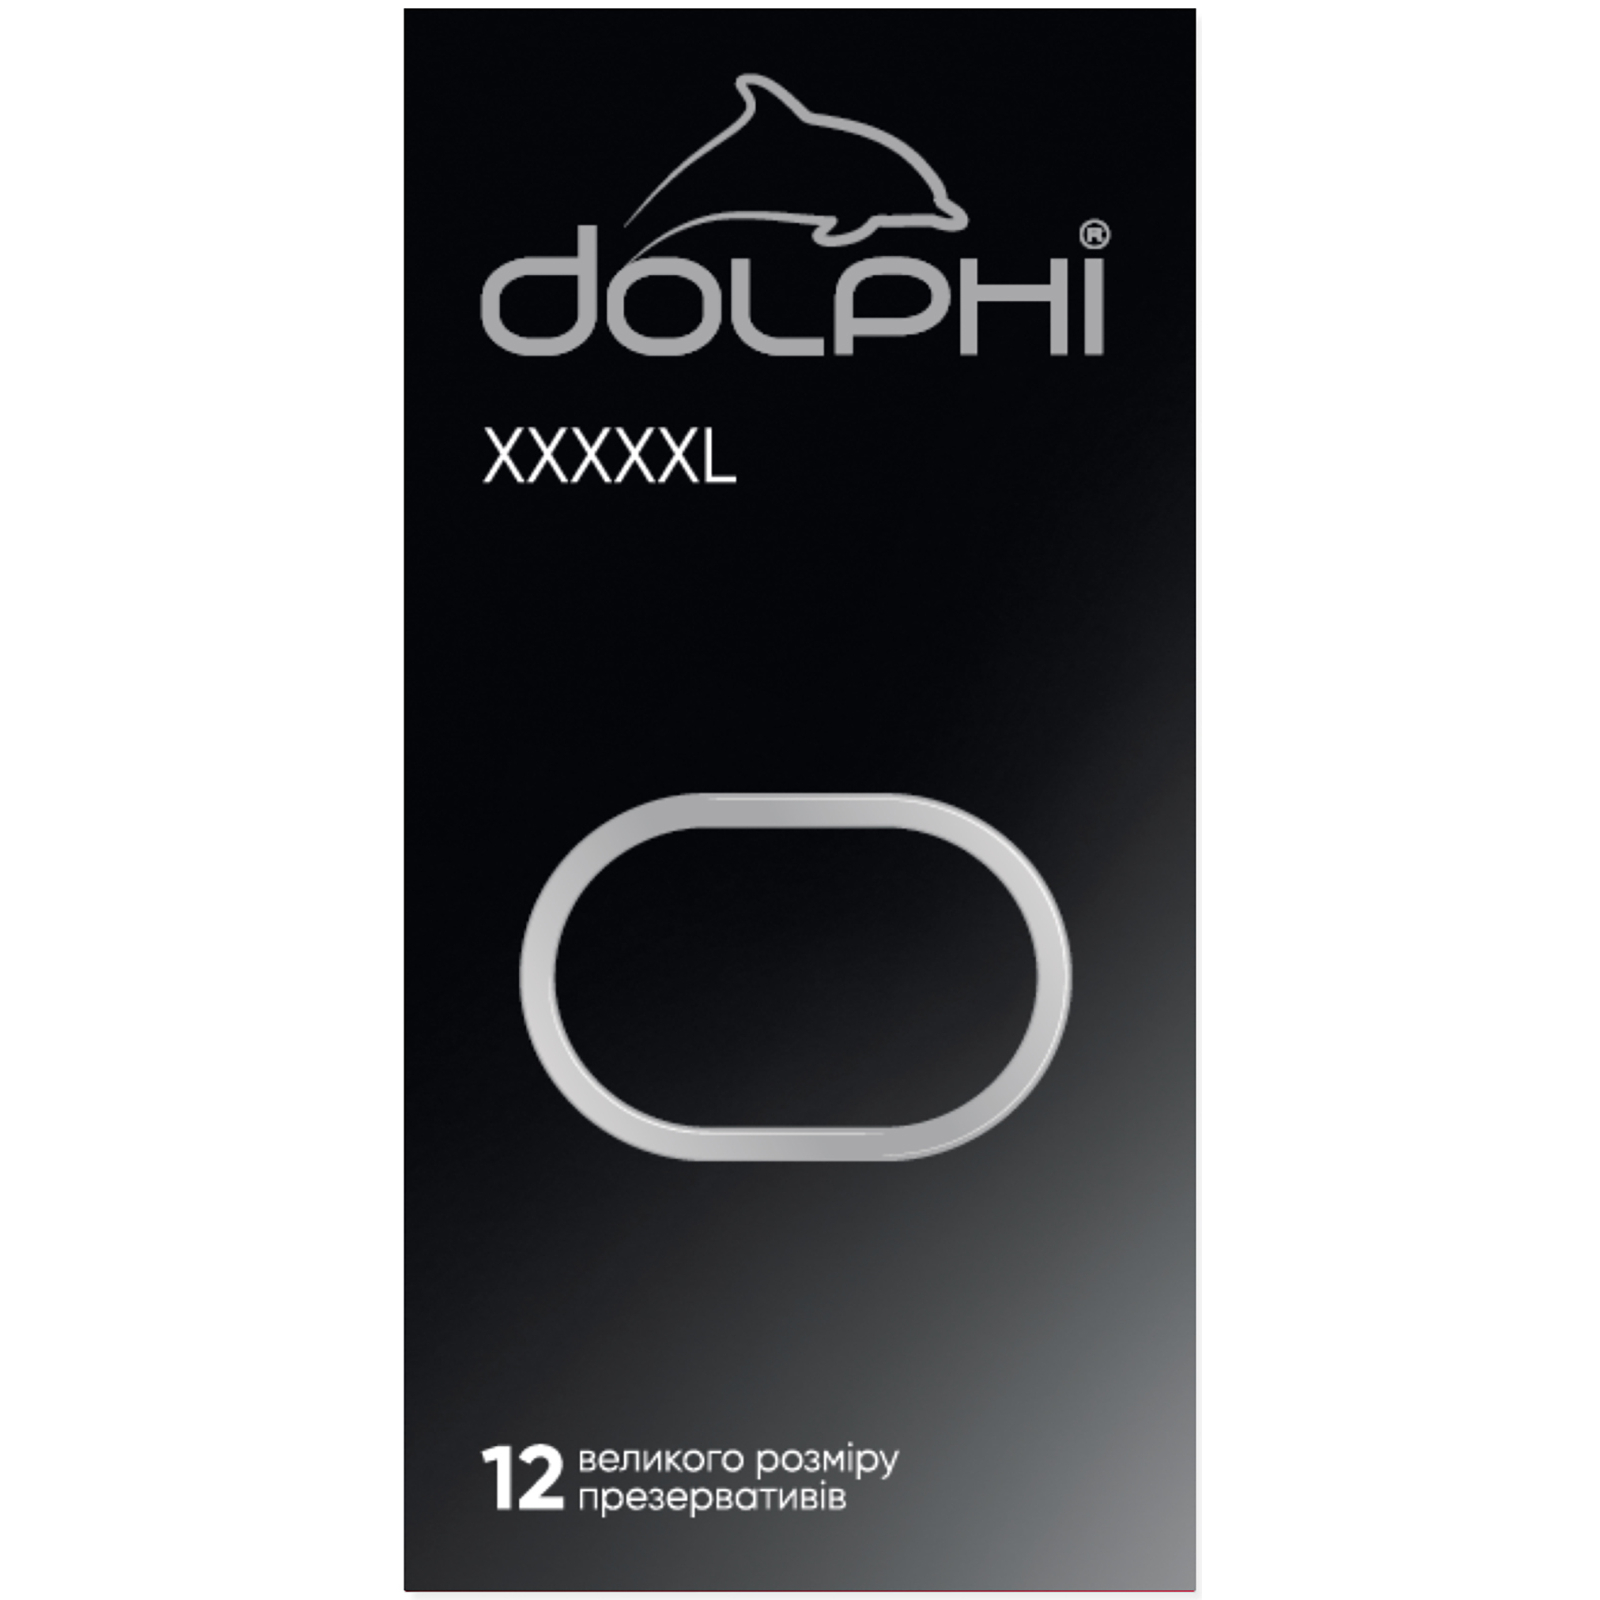 Презервативы Dolphi XXXXXL 3 шт. (4820144770777)